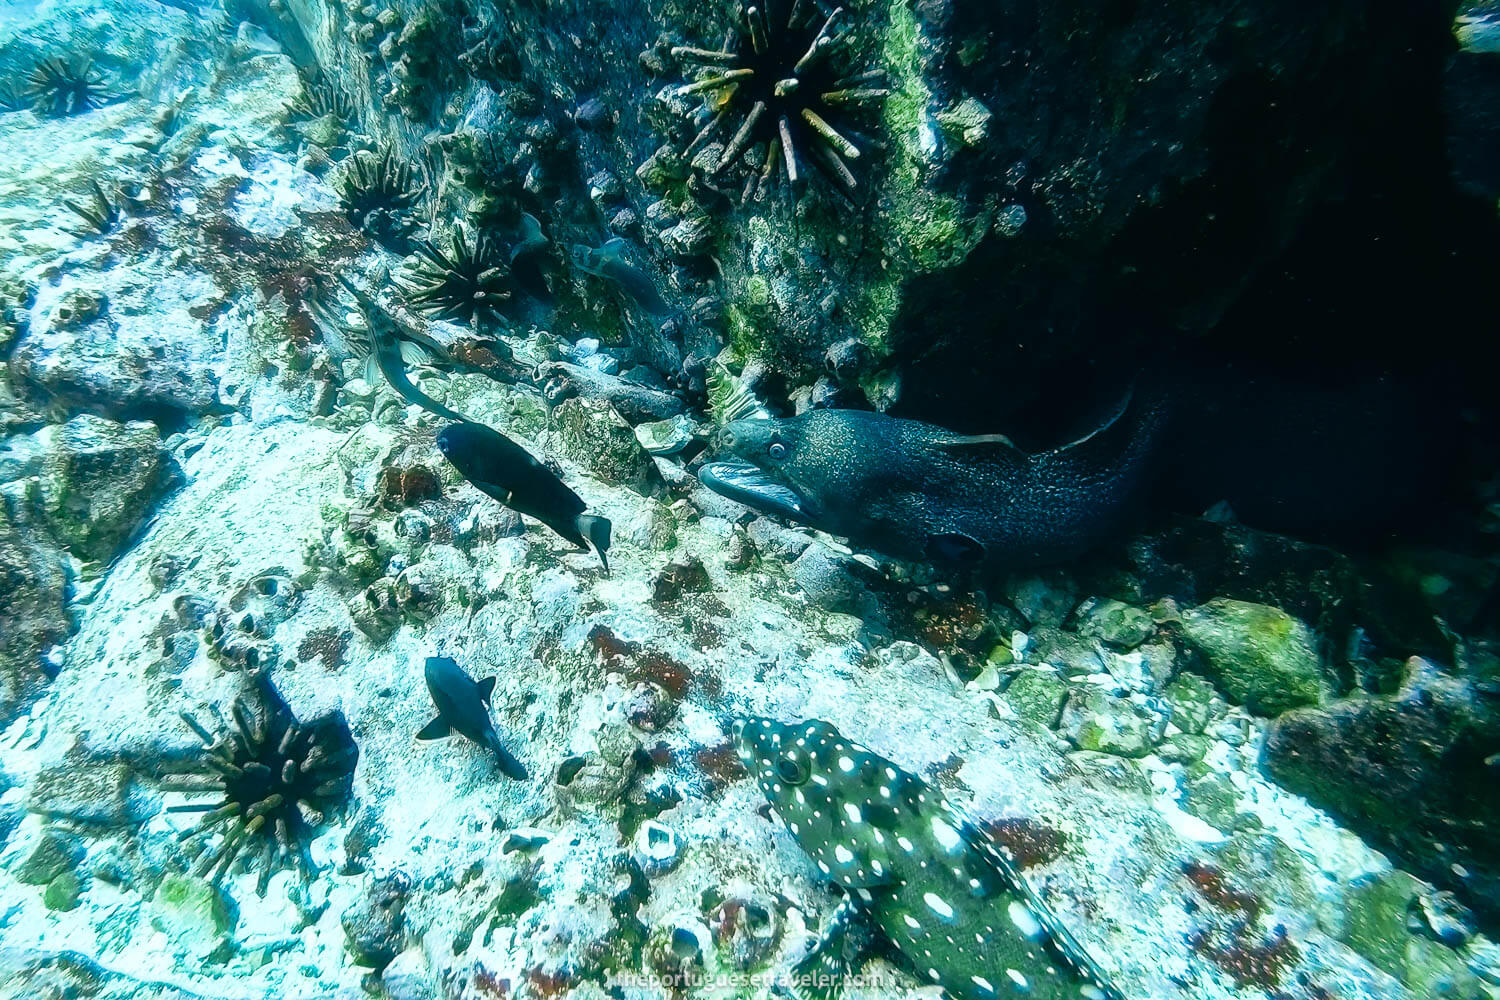 A moray eel in Kicker Rock